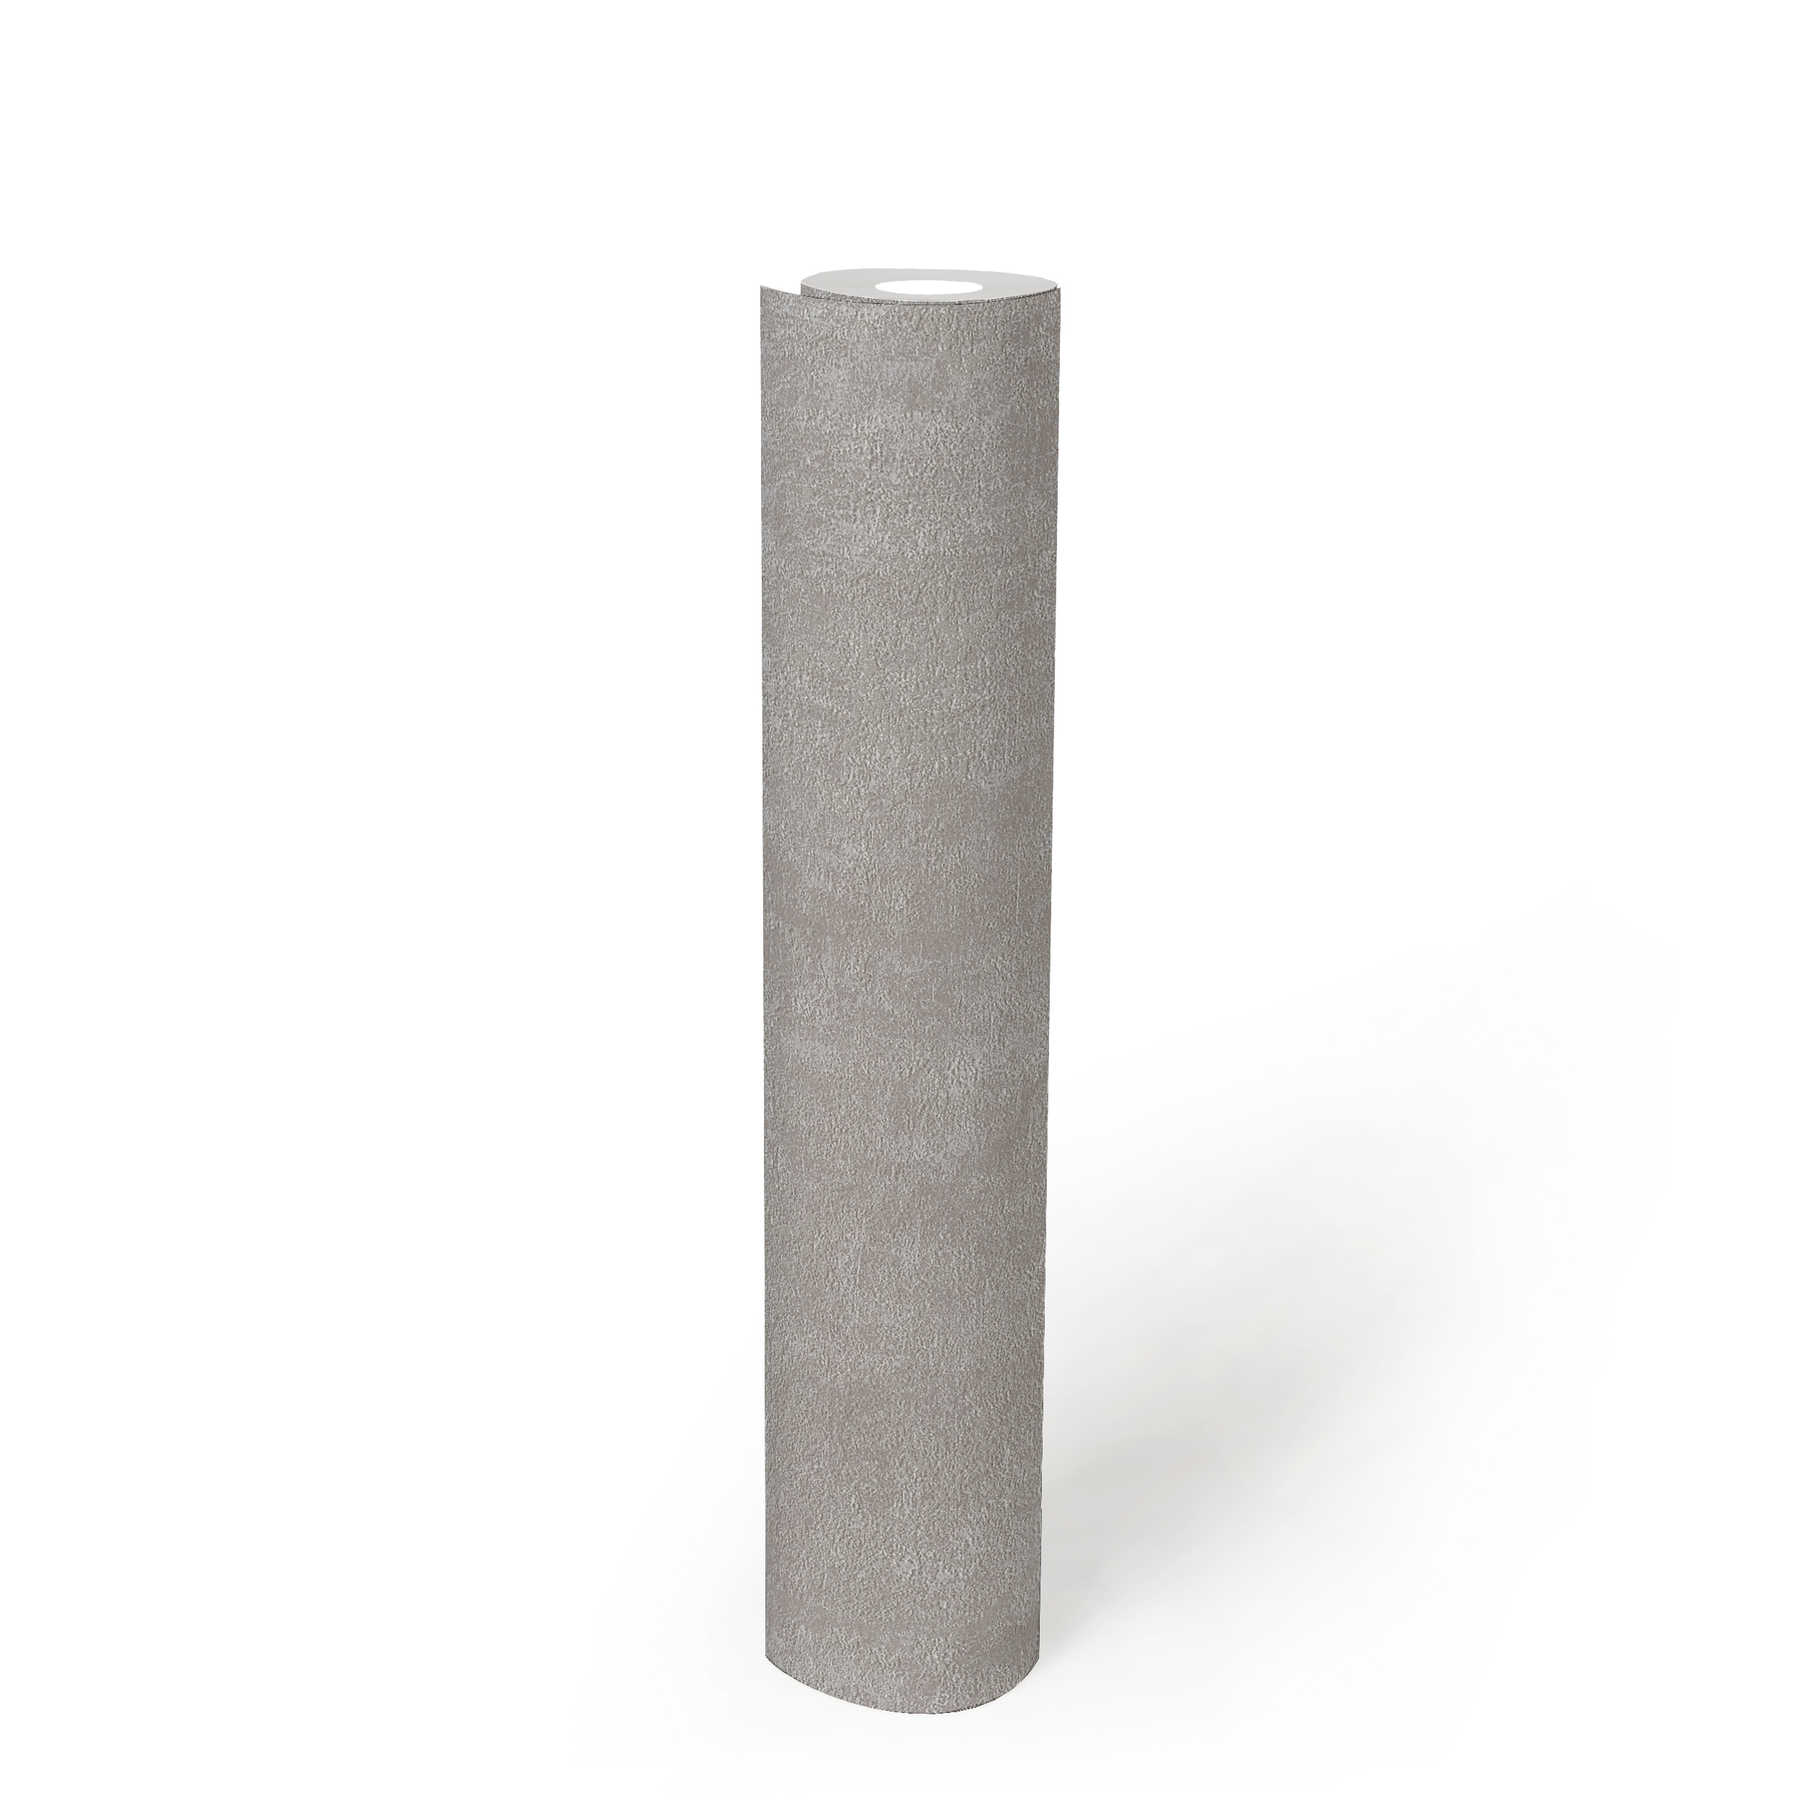             papel pintado estructura de yeso, liso y satinado - gris
        